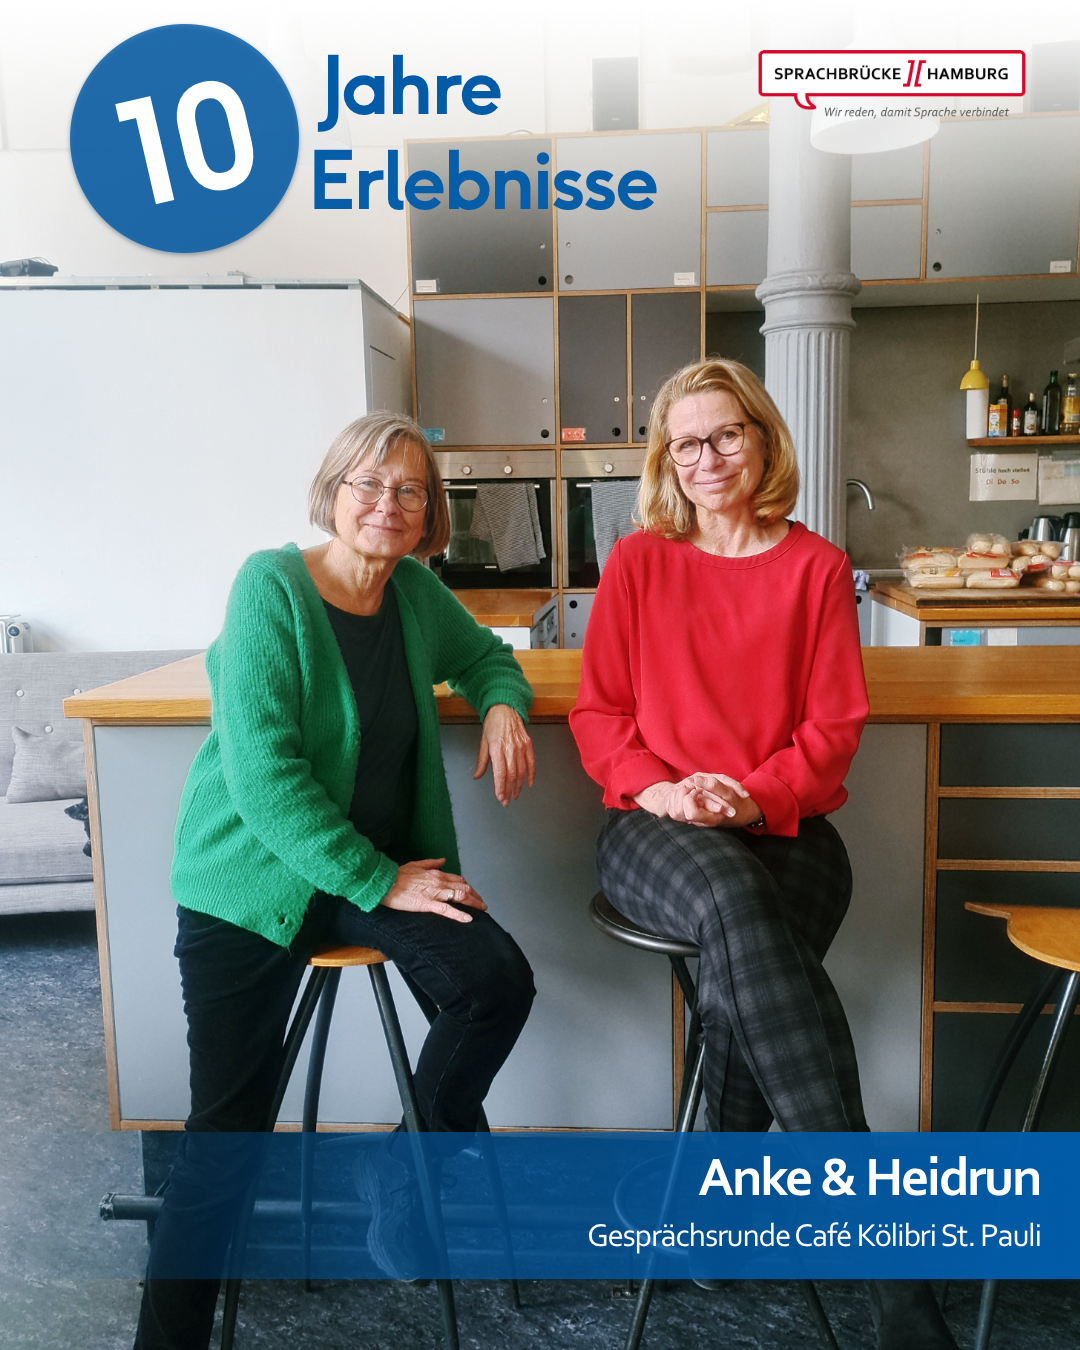 Die beiden Gesprächsleiterinnen Anke und Heidrun vom Gesprächsstandort St. Pauli sitzen auf Barhockern und lächeln in die Kamera